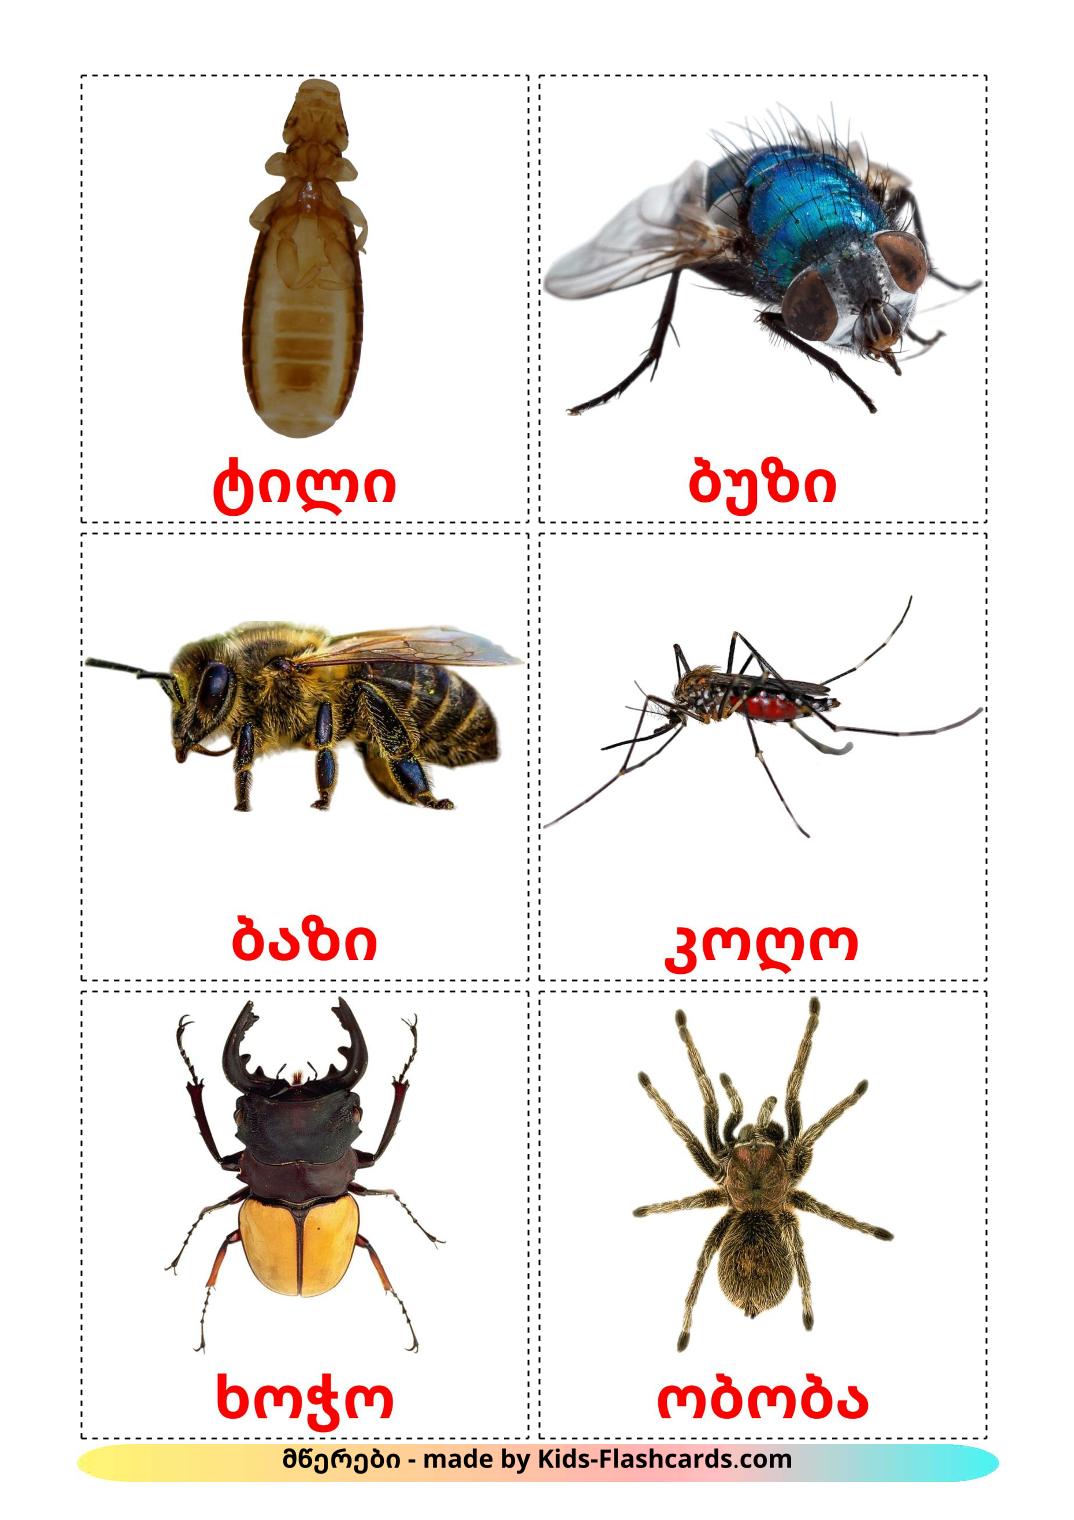 Les Insectes - 23 Flashcards géorgien imprimables gratuitement